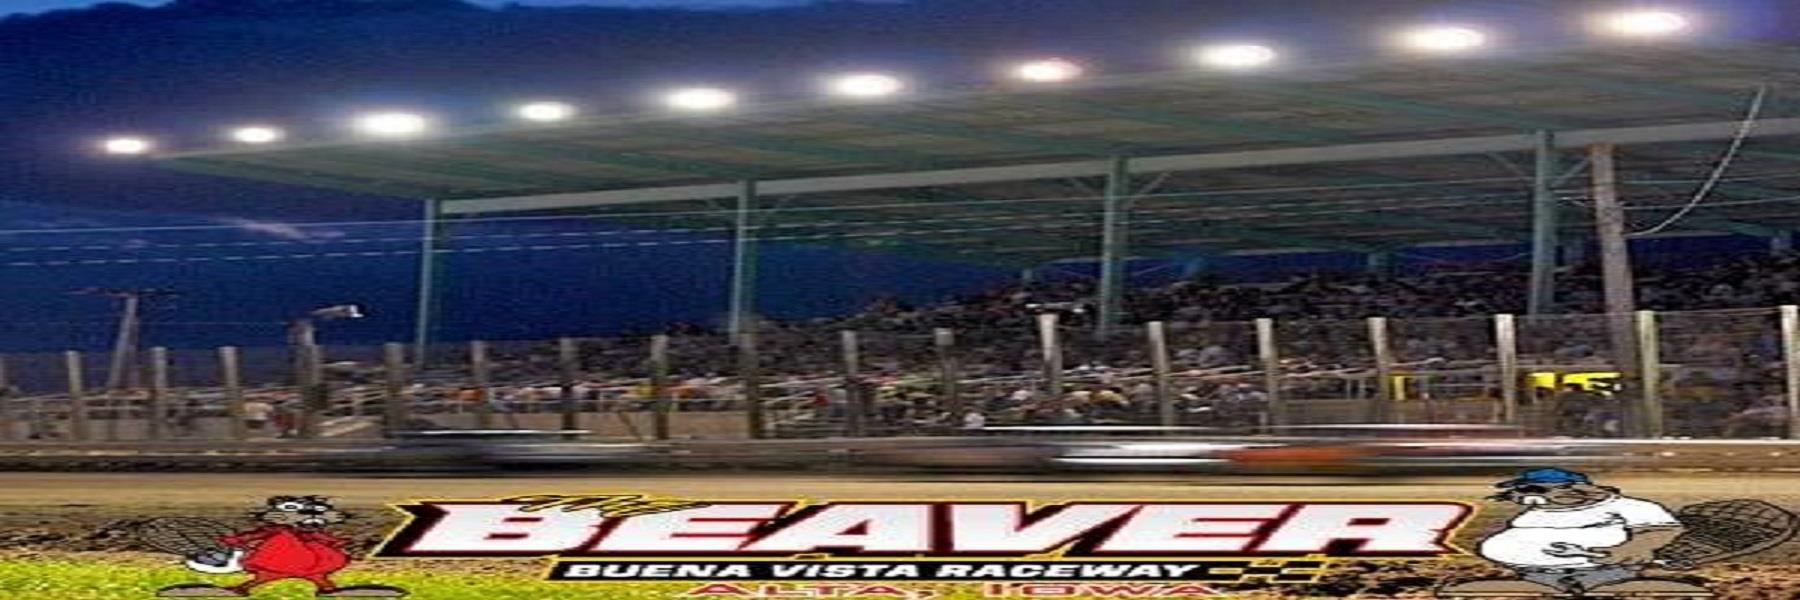 5/31/2023 - Buena Vista Raceway